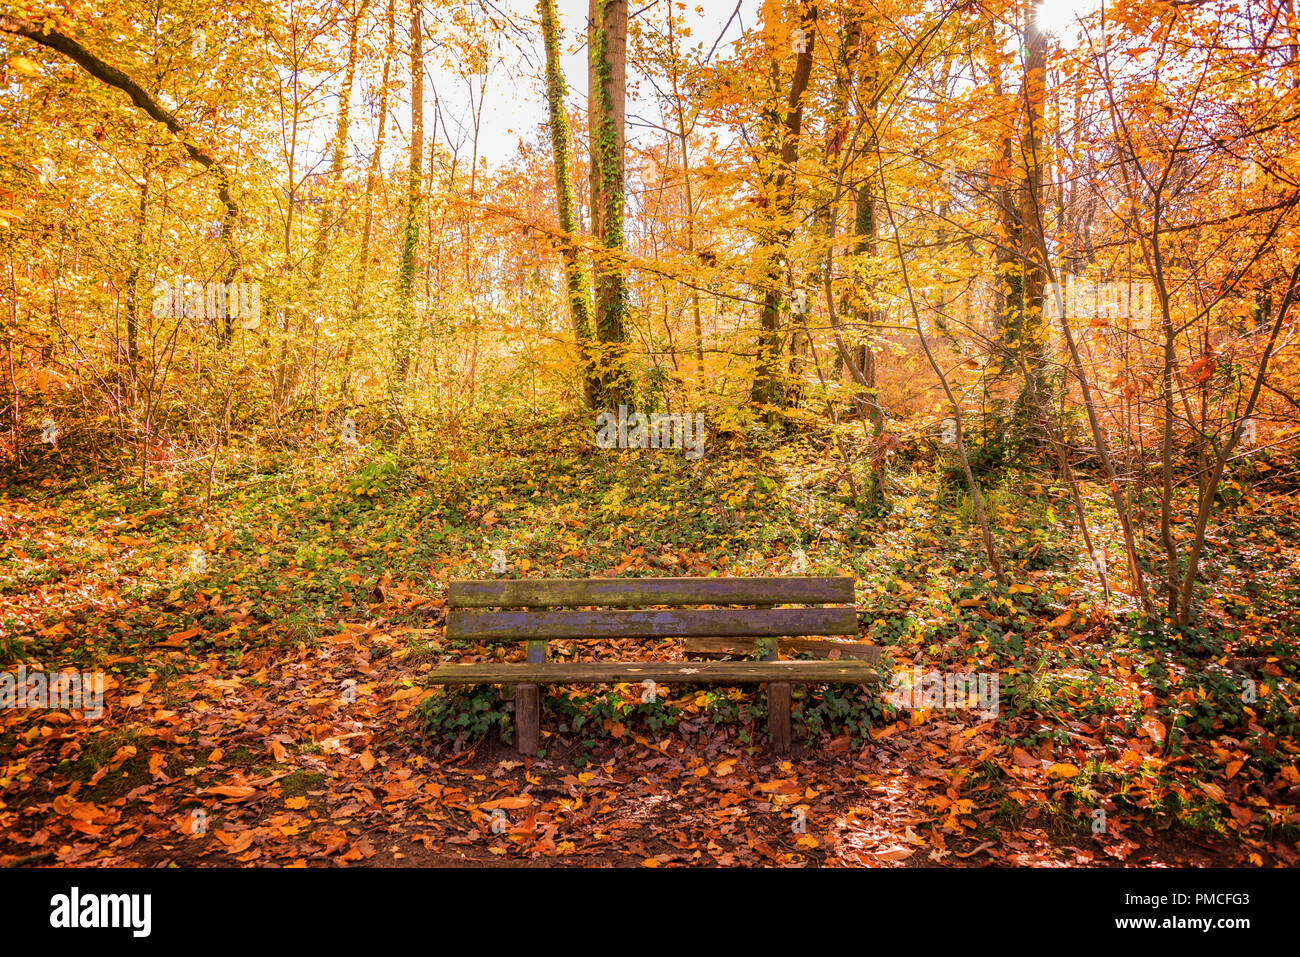 Banc en bois dans une forêt en automne Banque D'Images